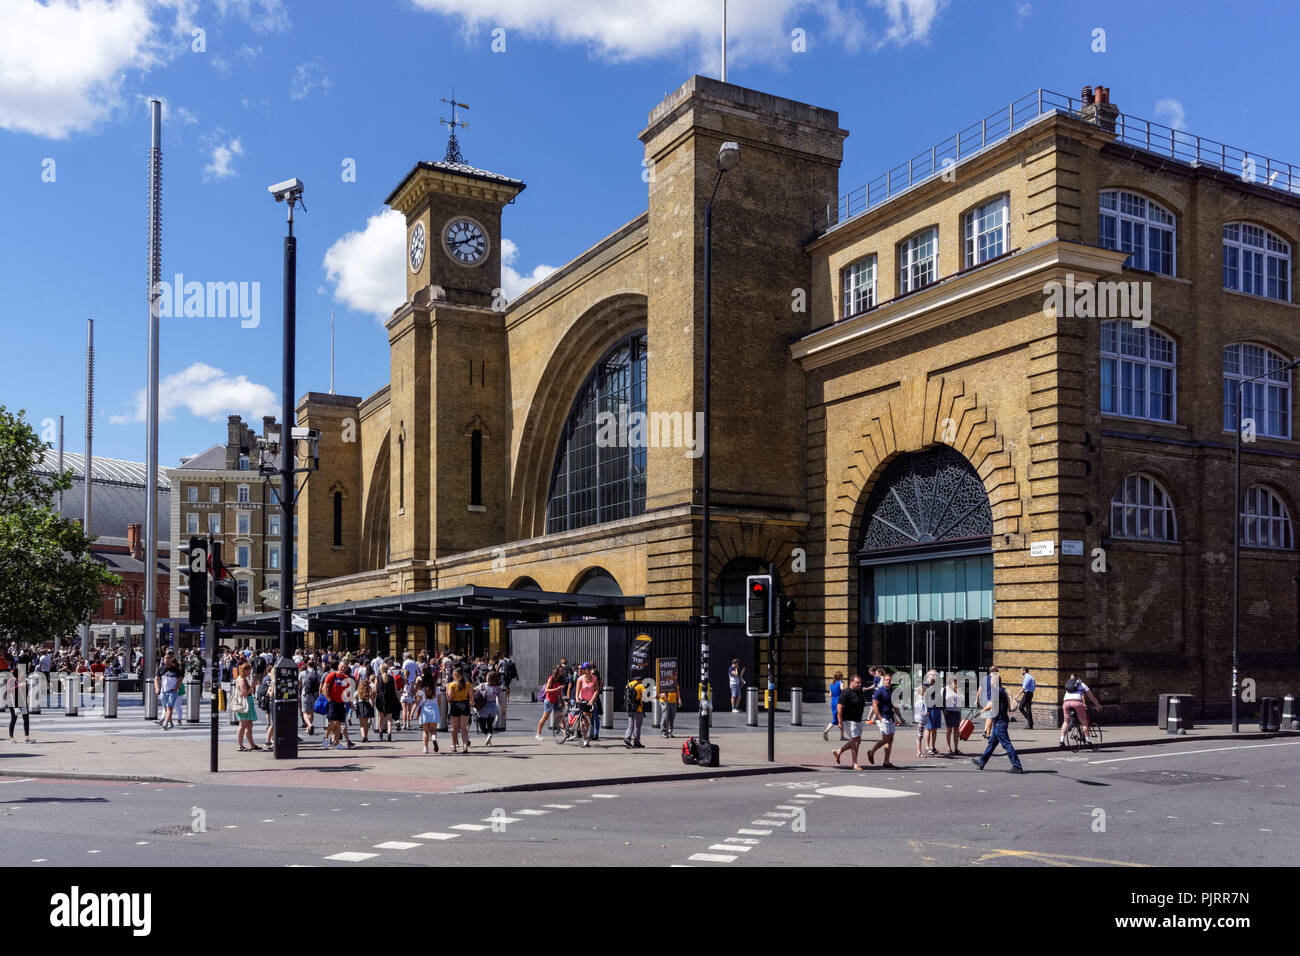 Les gens de l'extérieur de la gare ferroviaire de Kings Cross, Londres Angleterre Royaume-Uni UK Banque D'Images